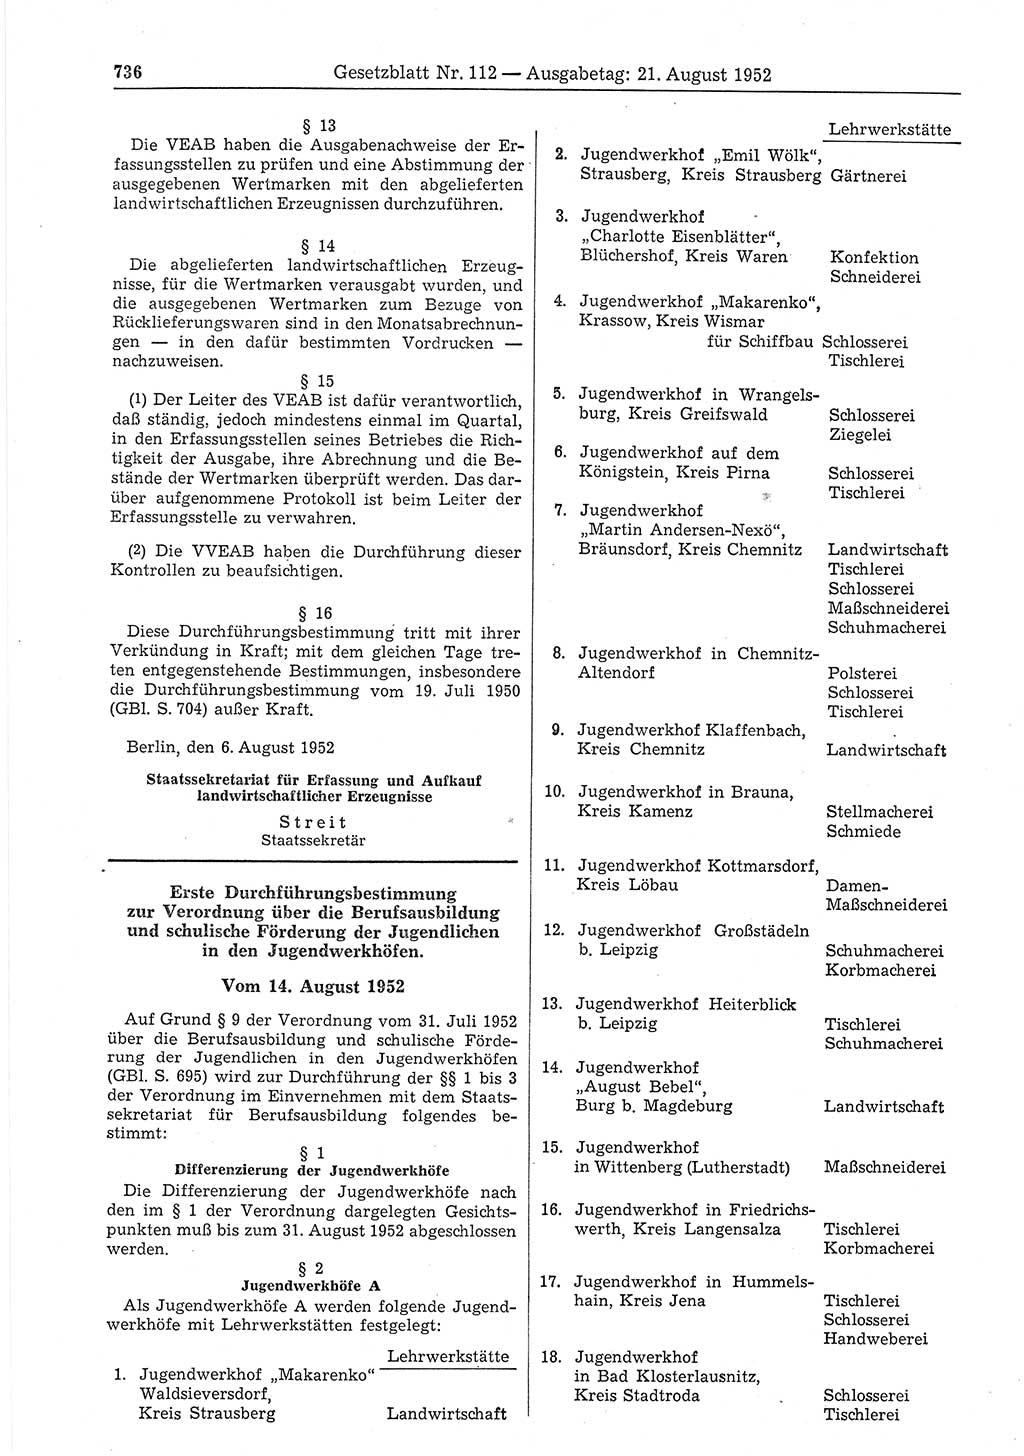 Gesetzblatt (GBl.) der Deutschen Demokratischen Republik (DDR) 1952, Seite 736 (GBl. DDR 1952, S. 736)